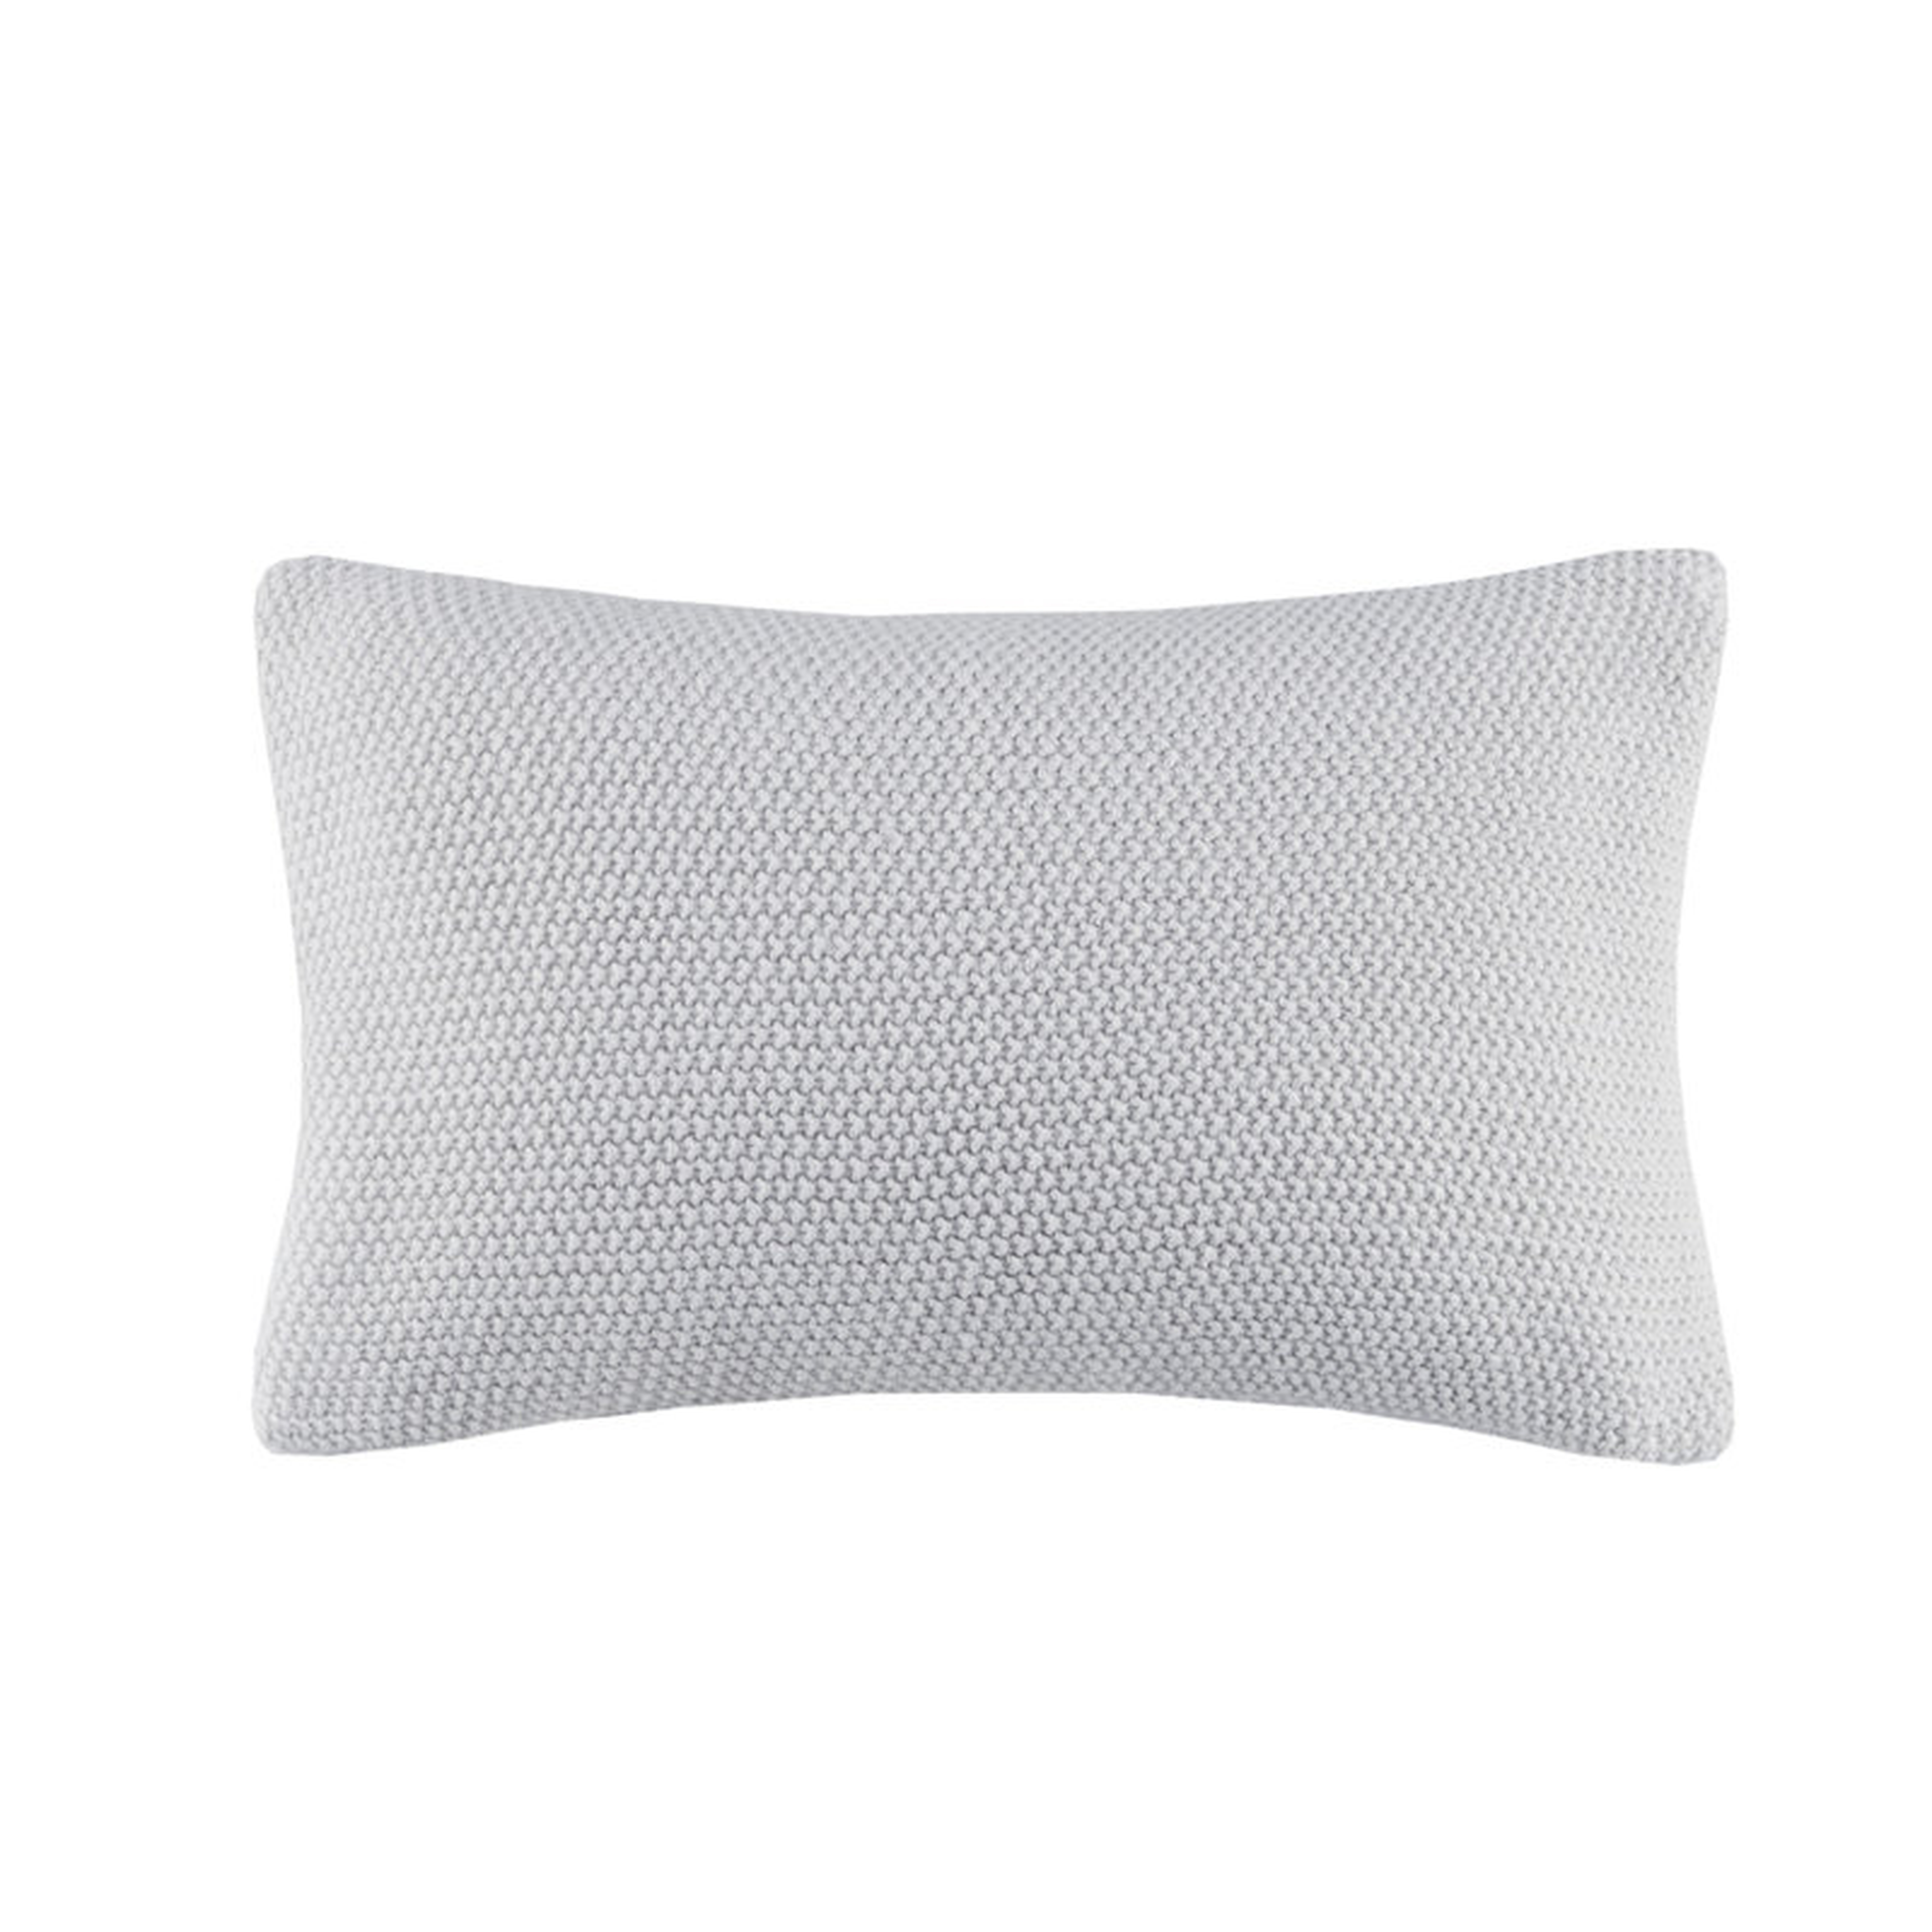 Caronni Knit Rectangular Pillow Cover - Wayfair